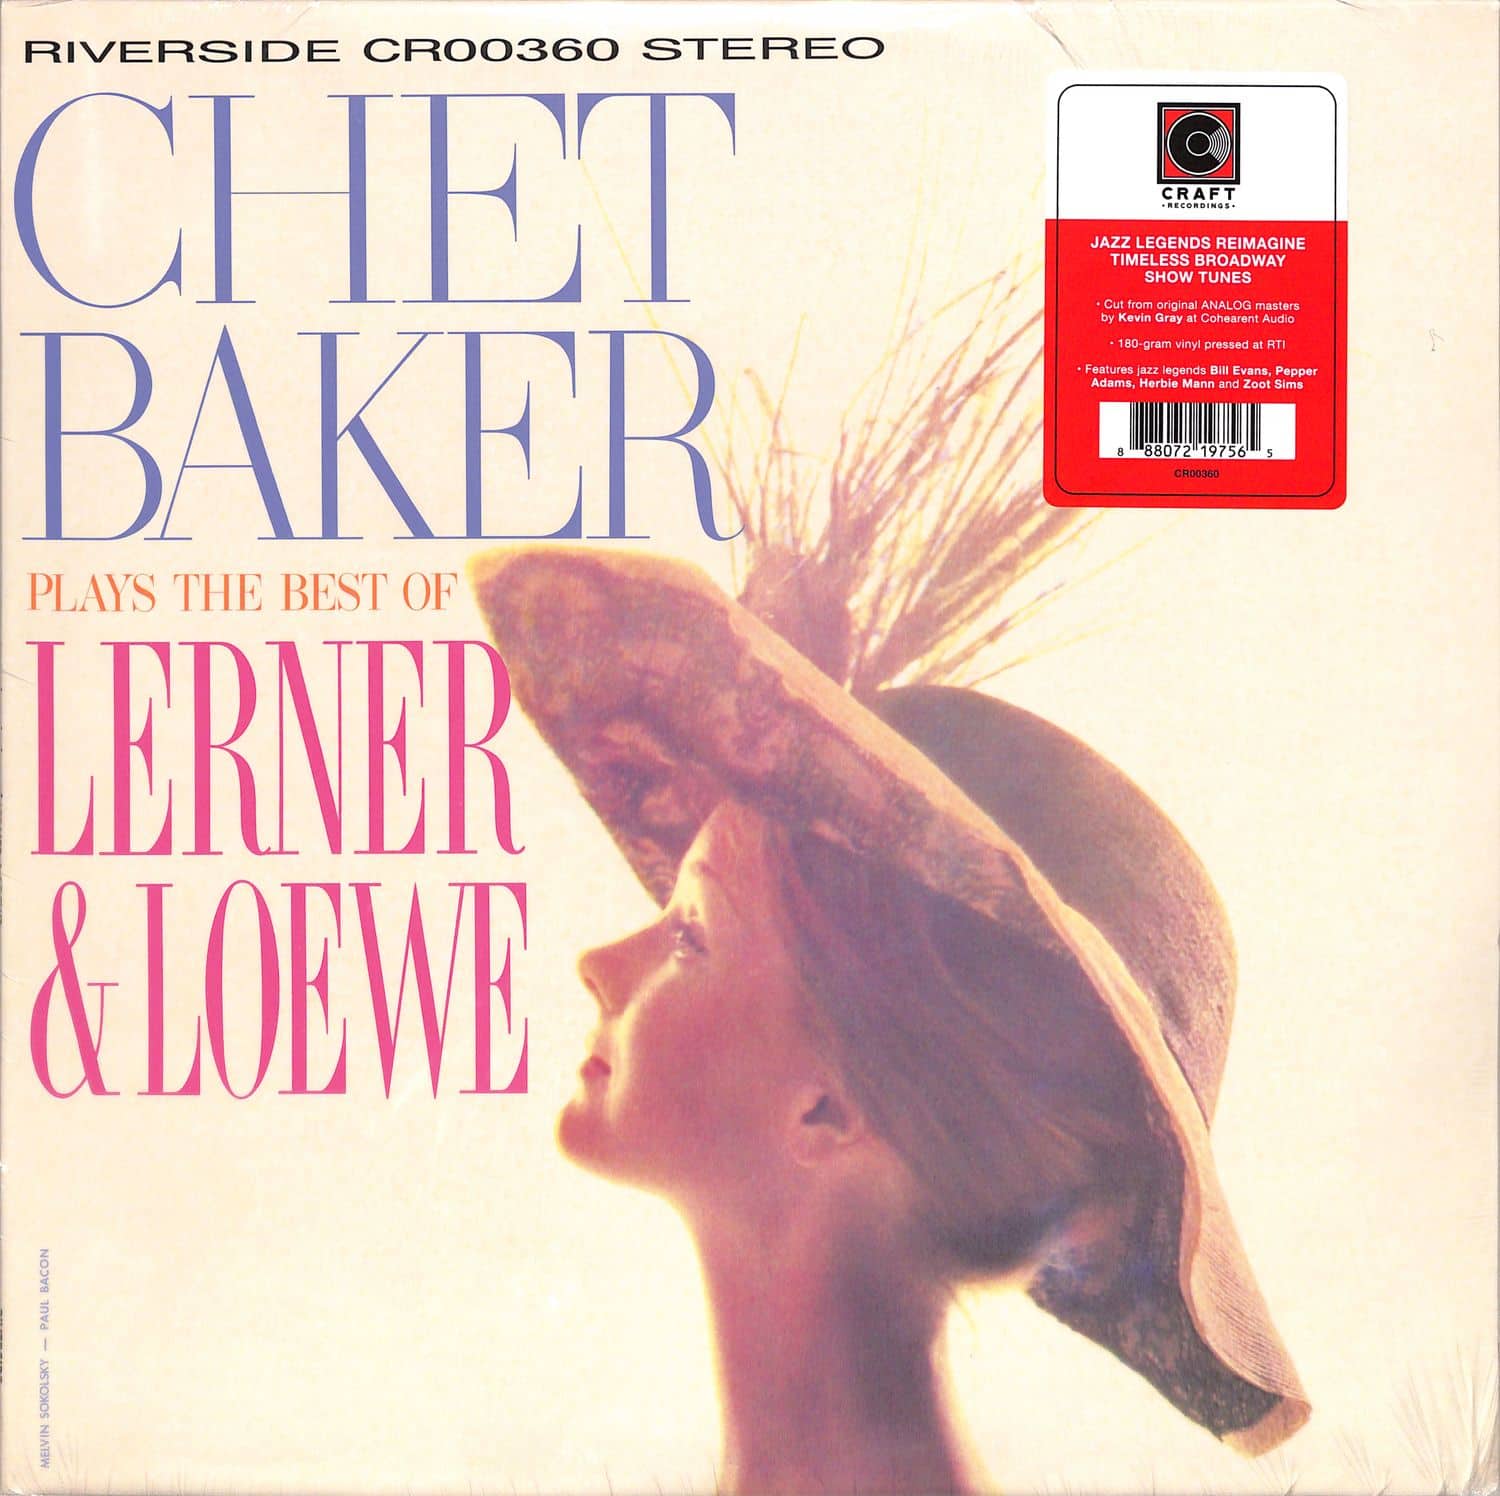 Chet Baker - PLAYS THE BEST OF LERNER & LOEWE 